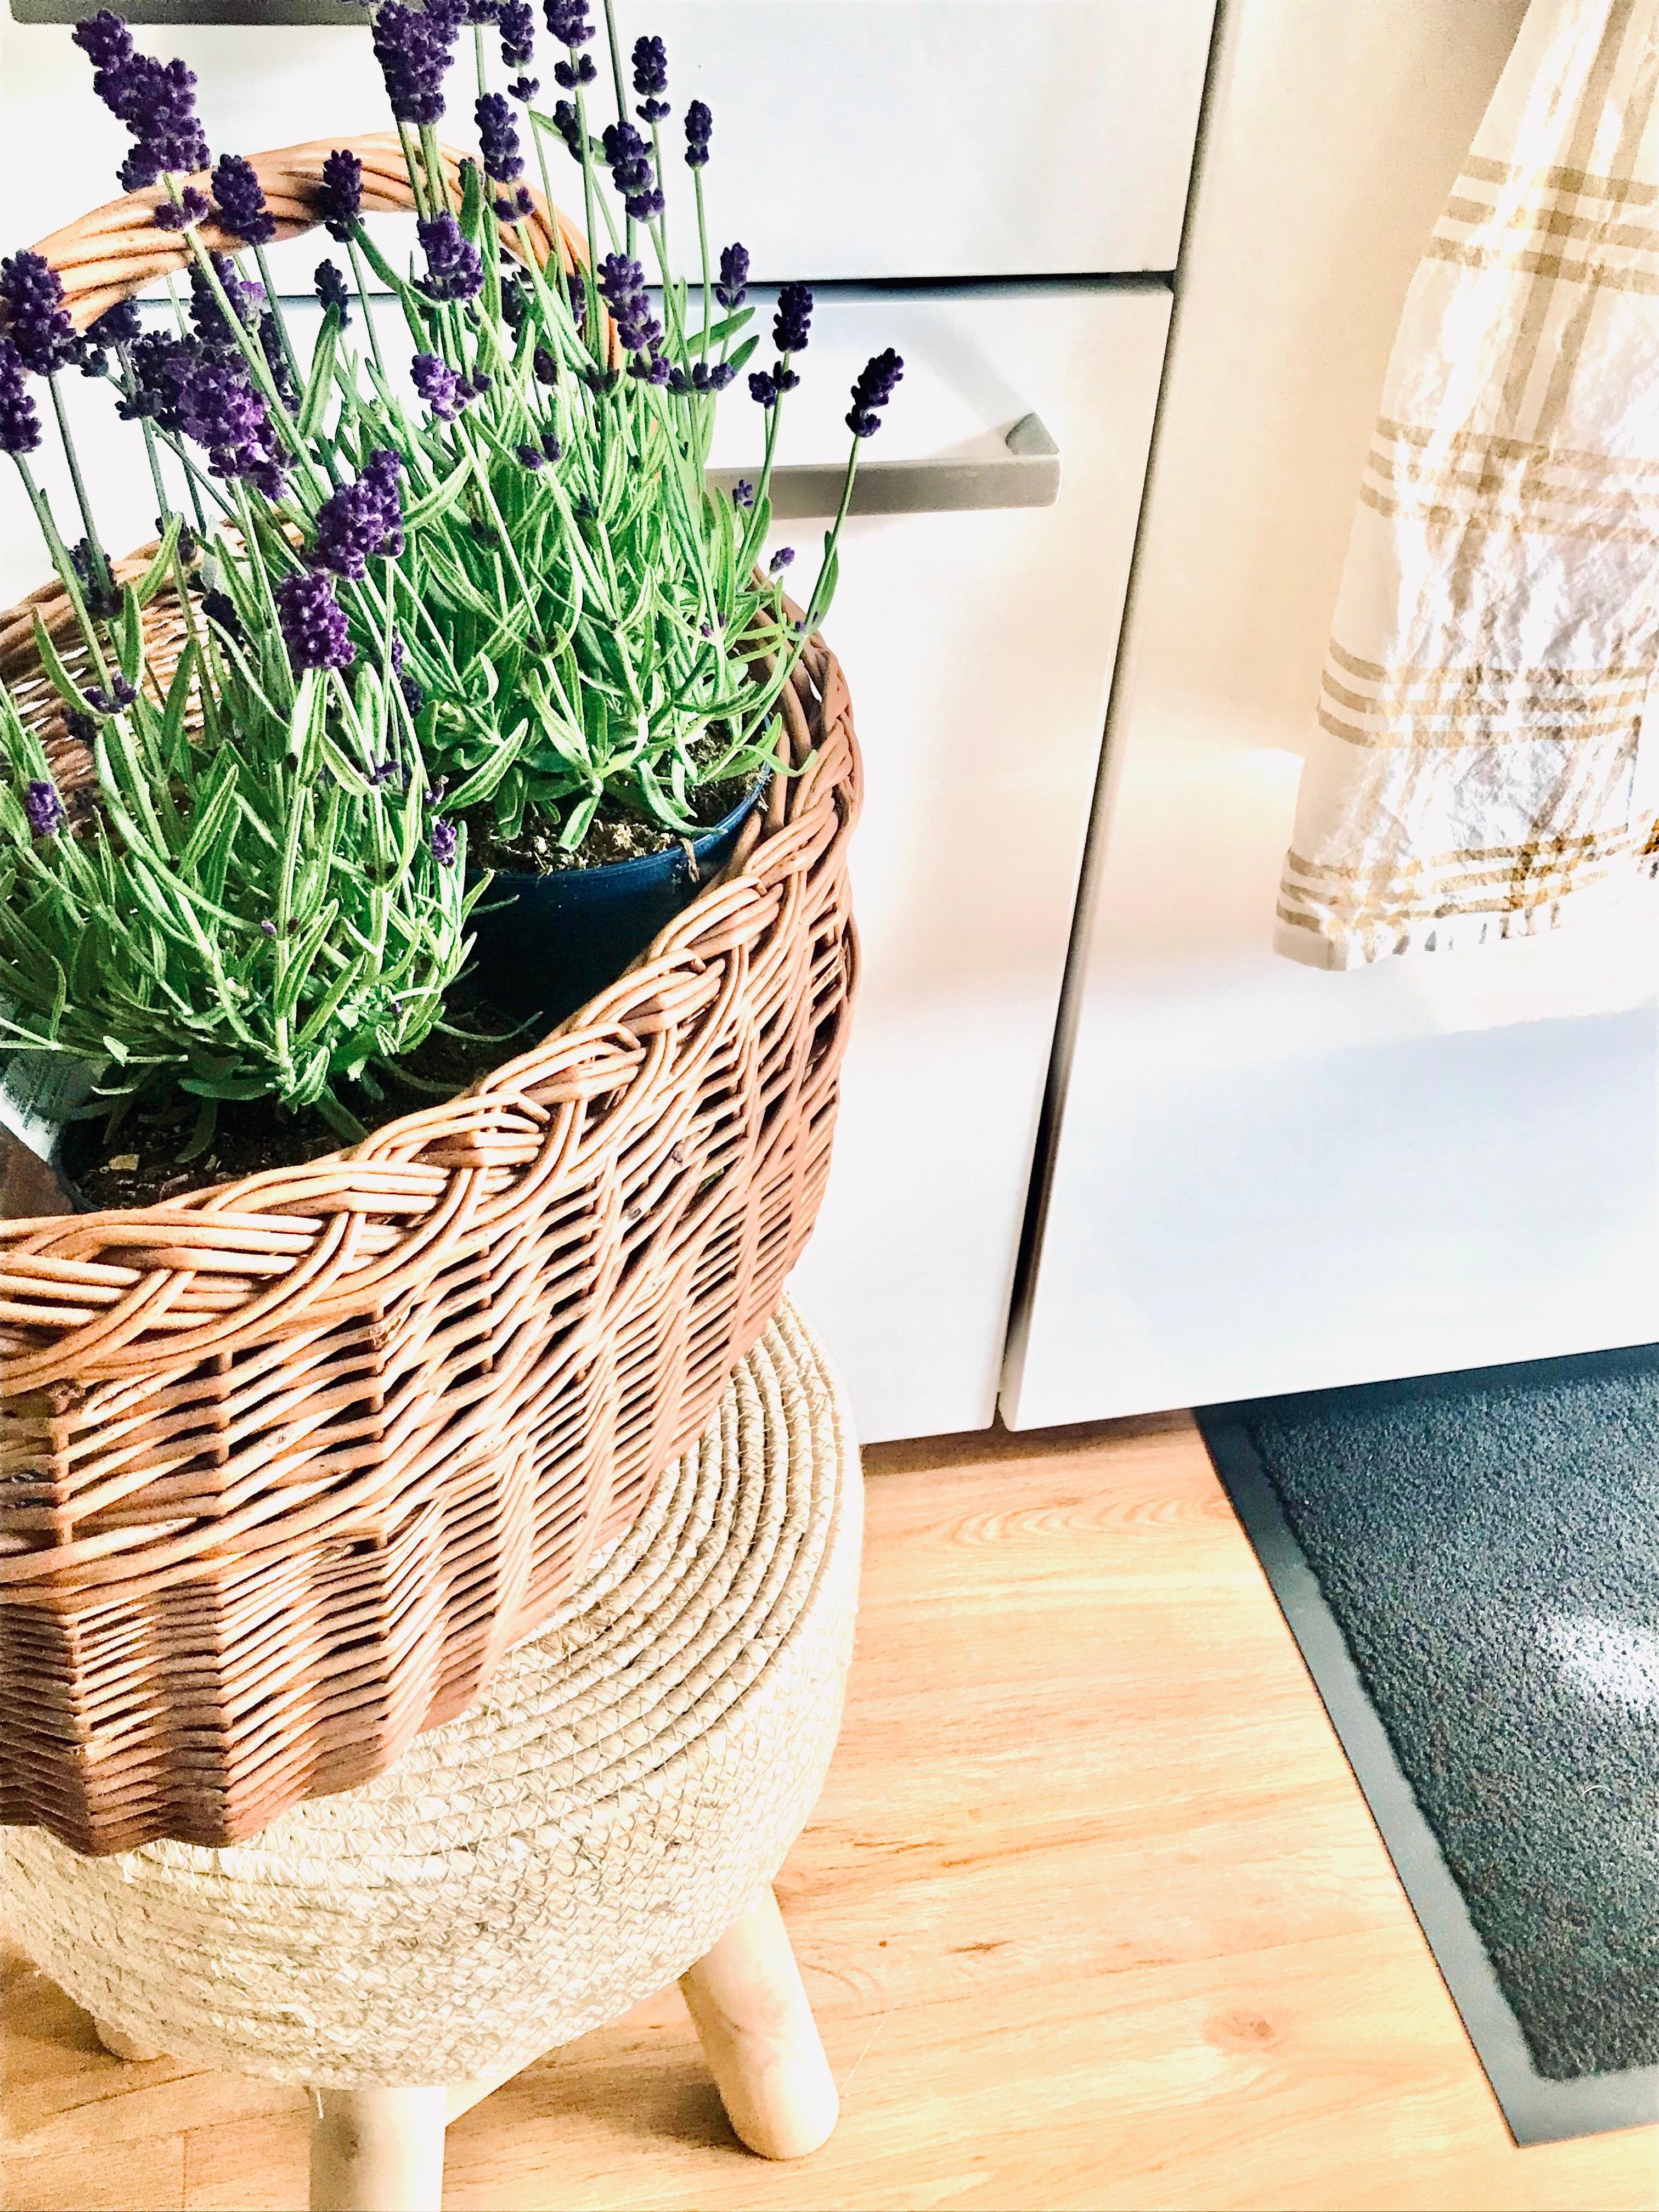 Sommerduft in der Küche 💜

#küche #home #sommer #lavendel #korb #hocker #fresh #rattan #teppich 